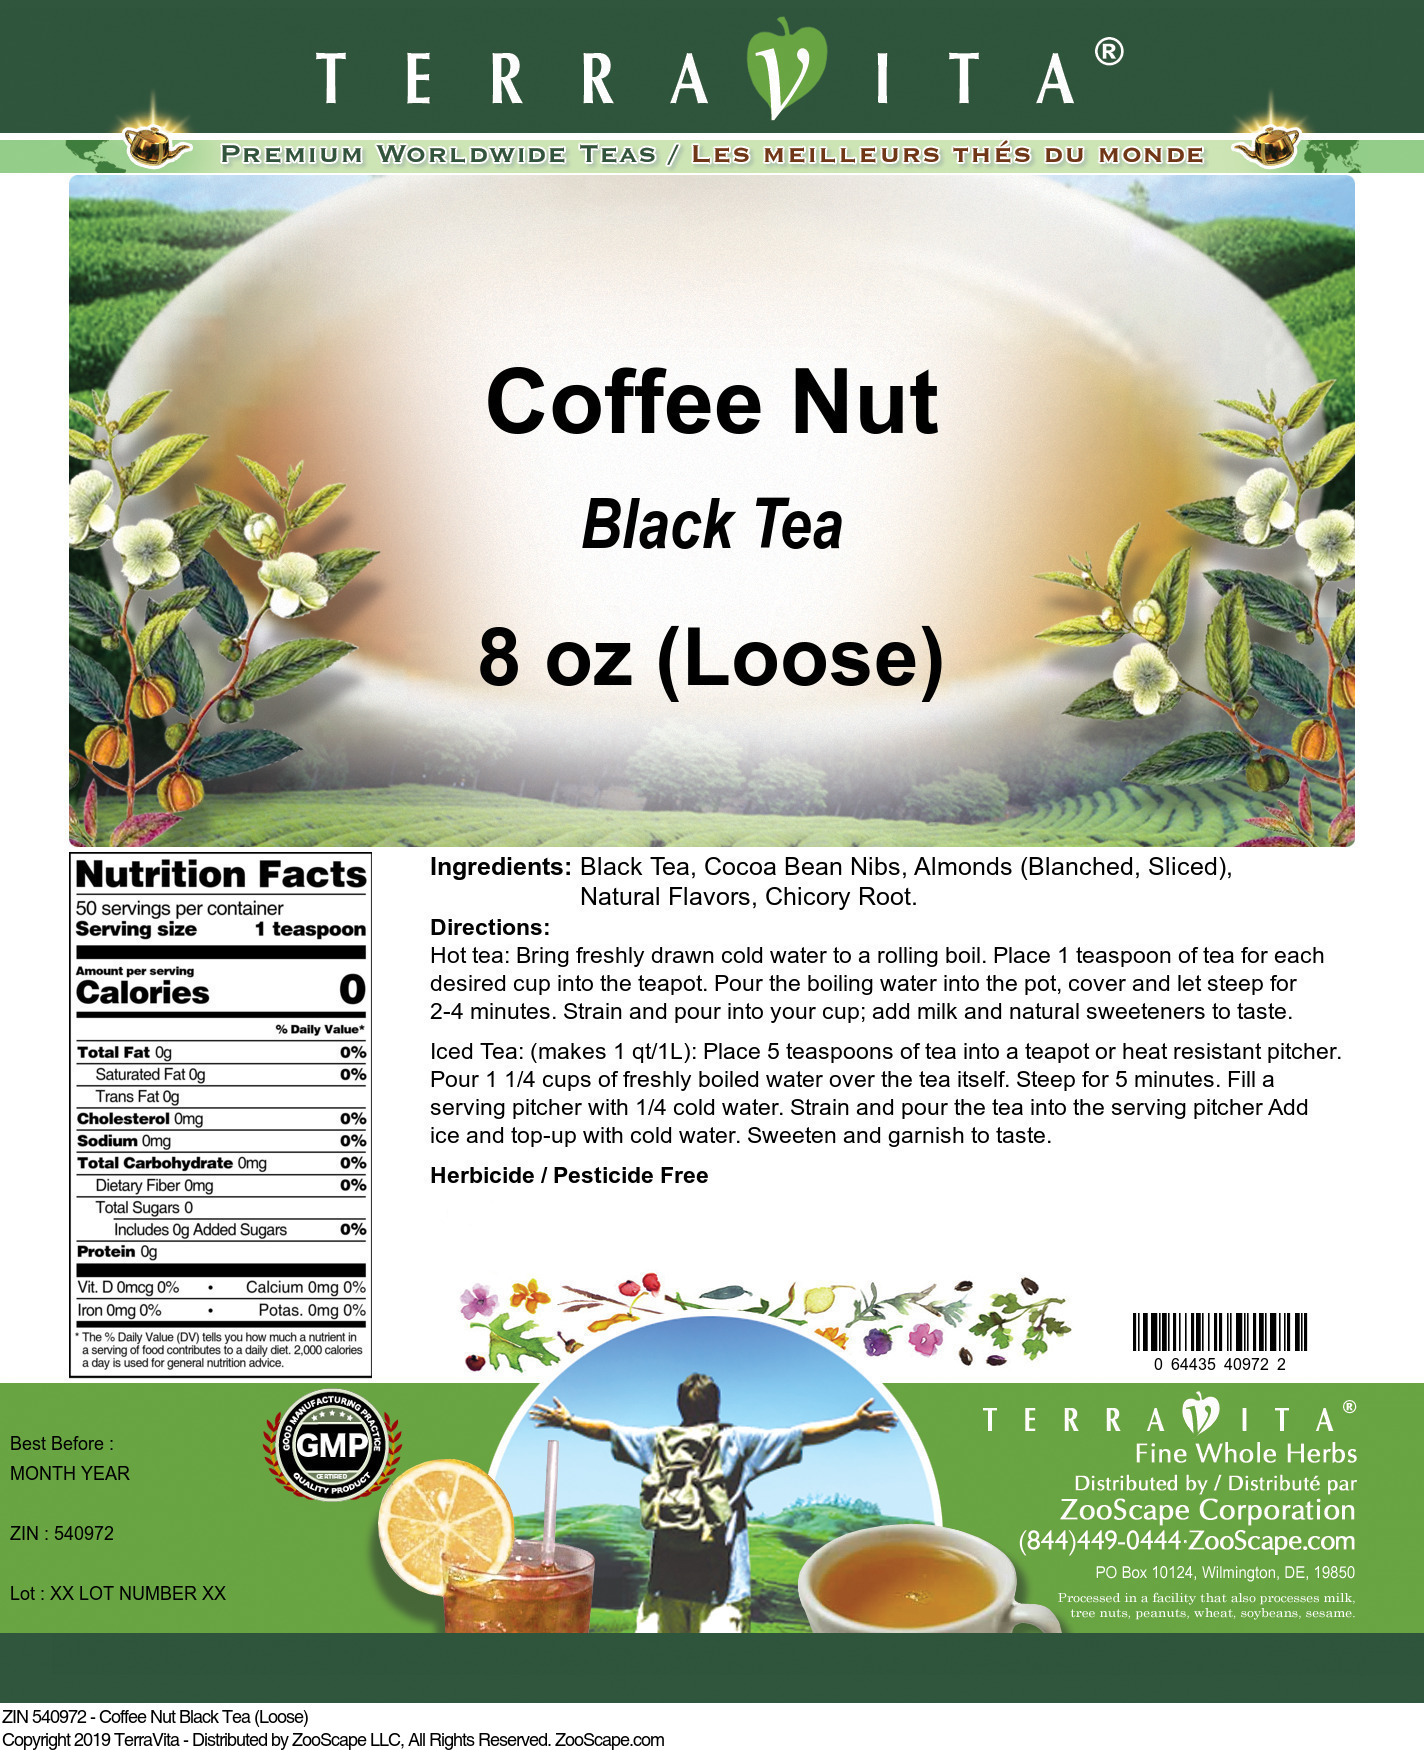 Coffee Nut Black Tea (Loose) - Label